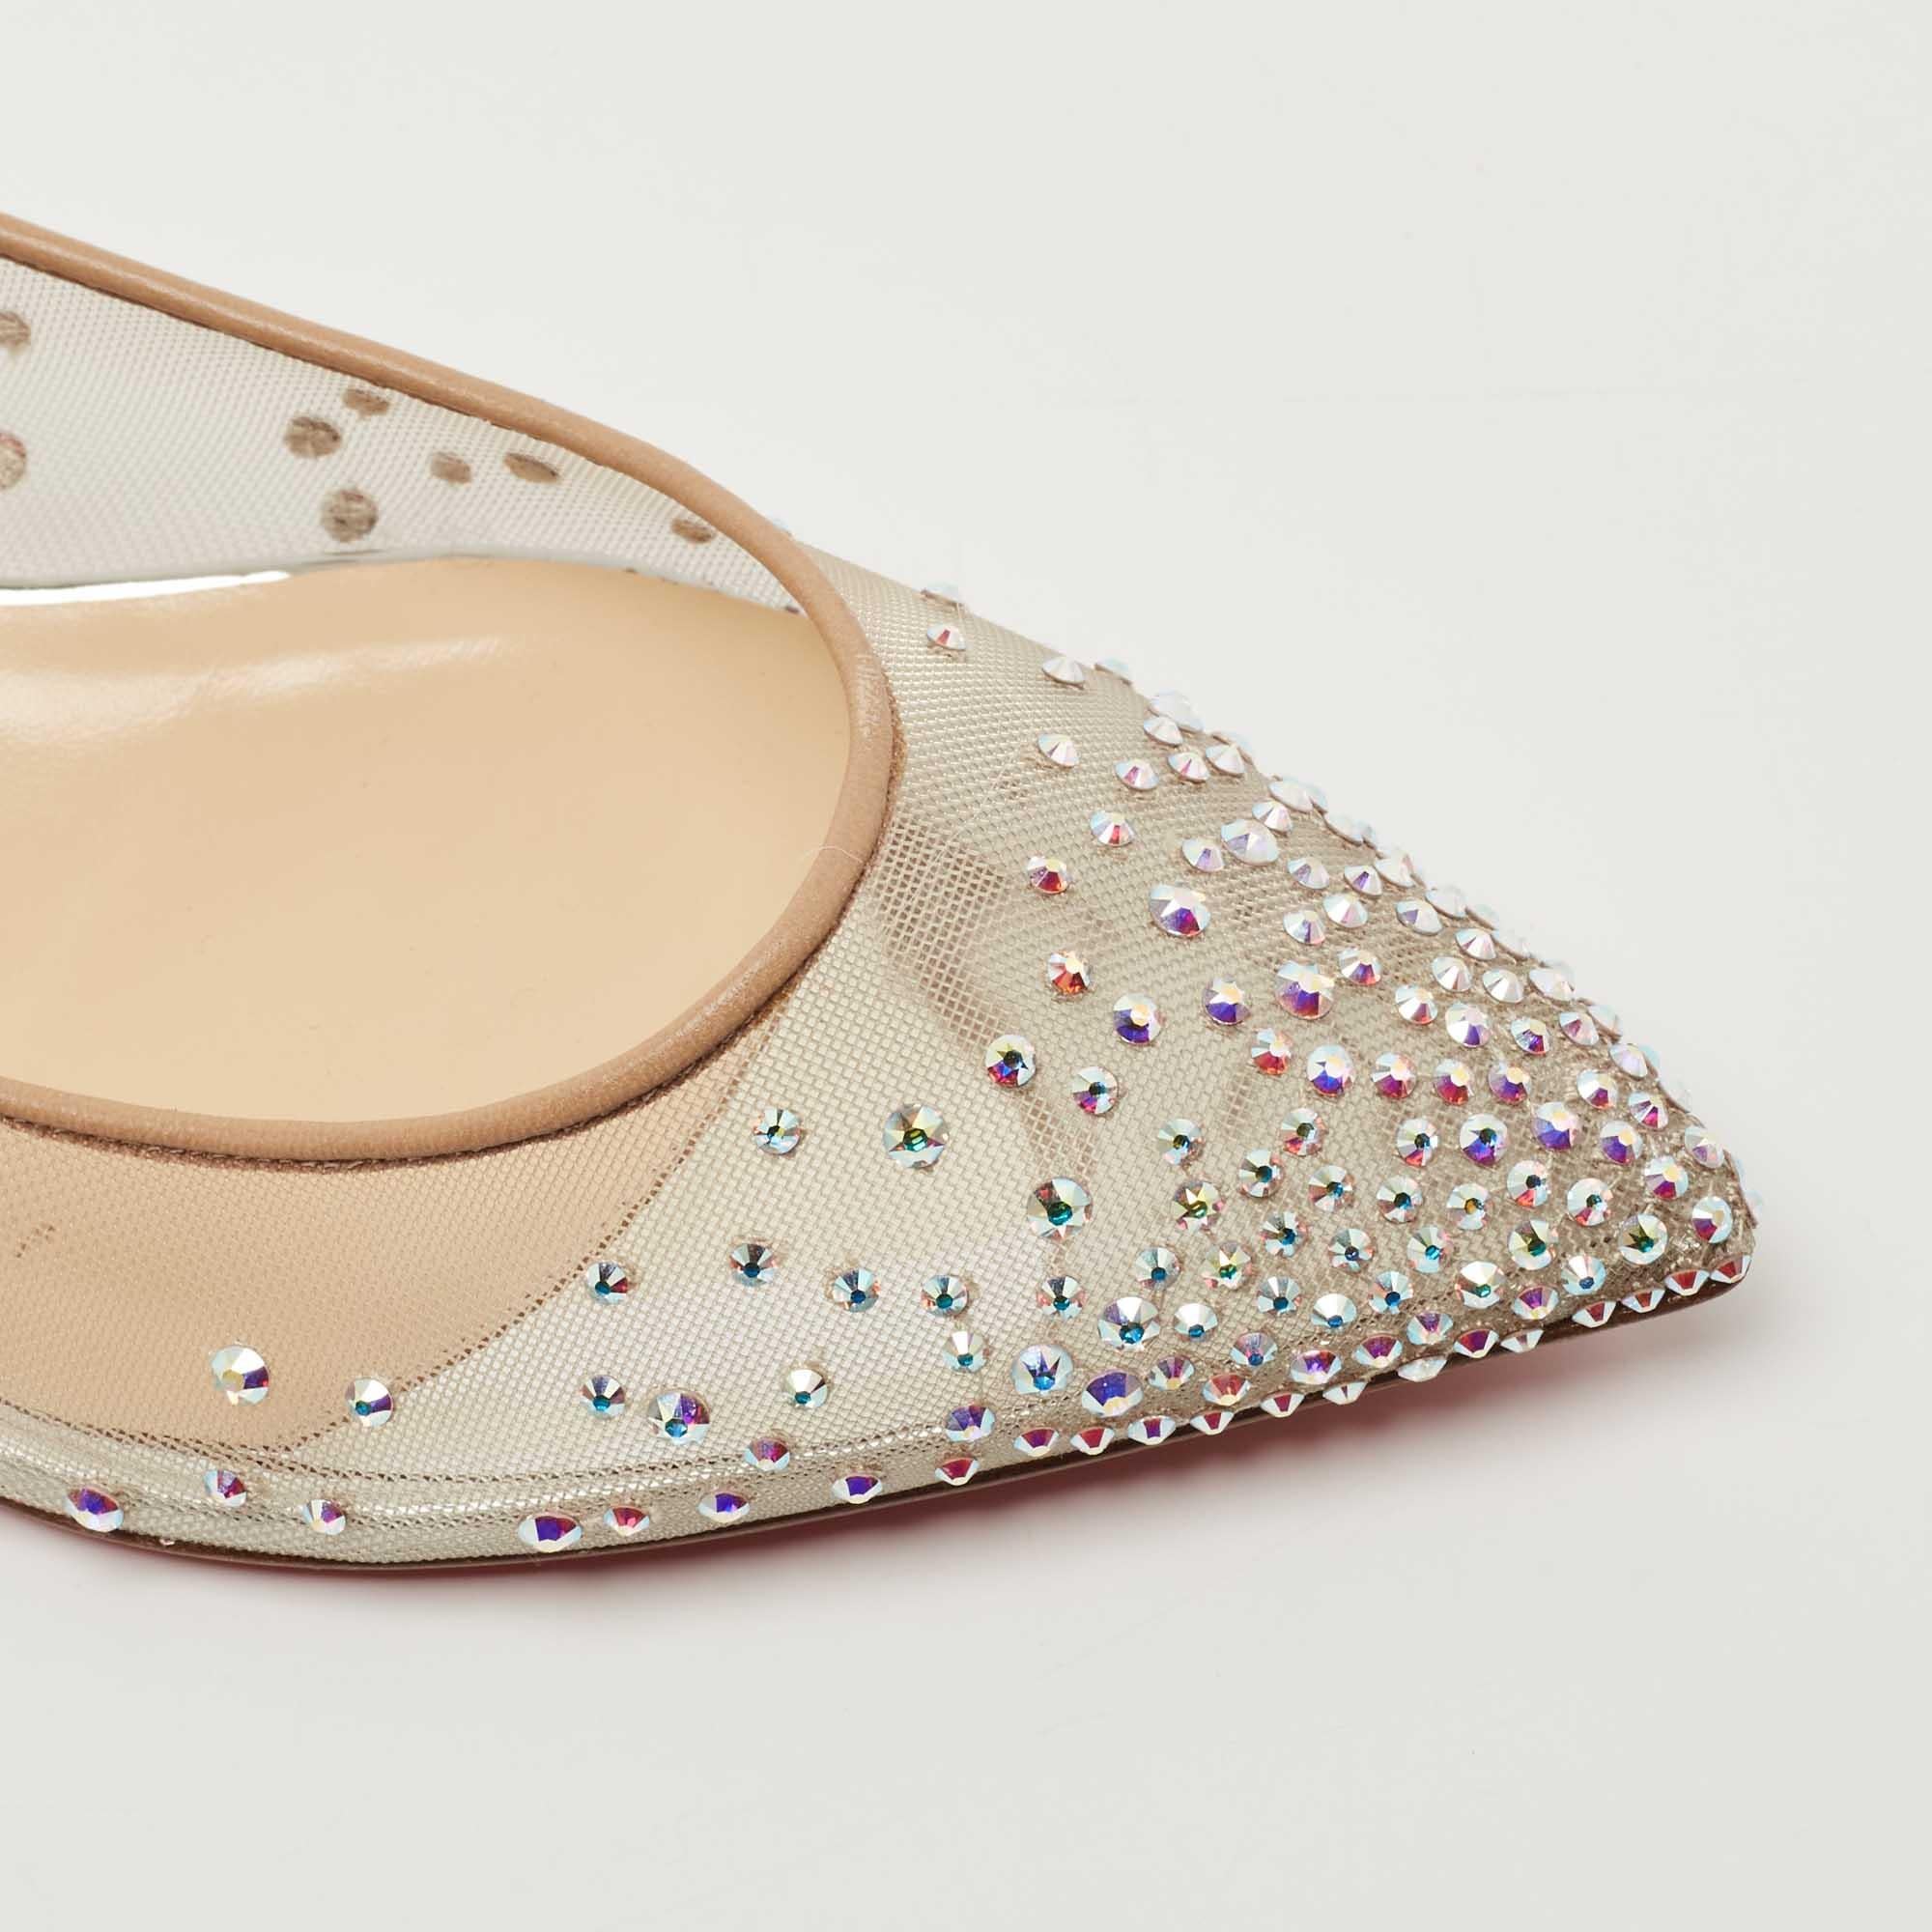 Christian Louboutin Metallic Glitter Follies Strass Ballet Flats Size 36.5 2